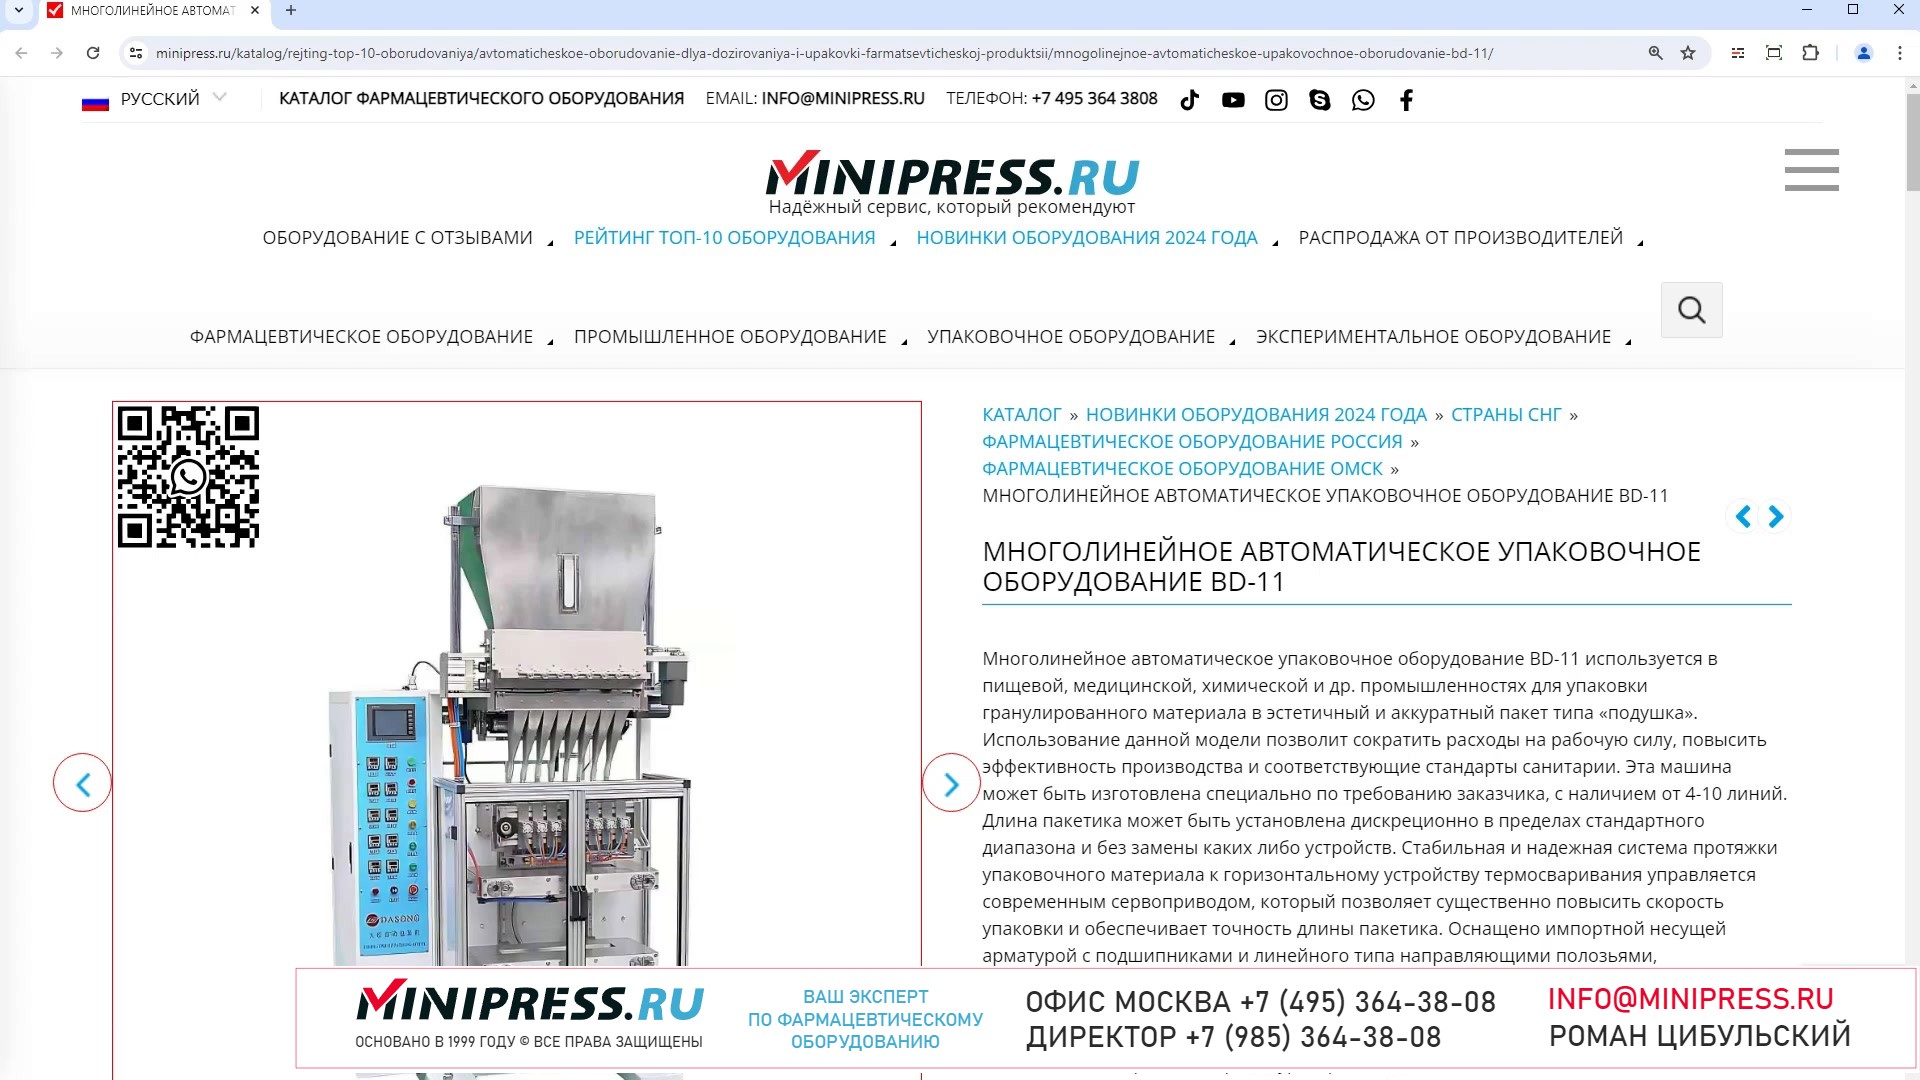 Minipress.ru Многолинейное автоматическое упаковочное оборудование BD-11